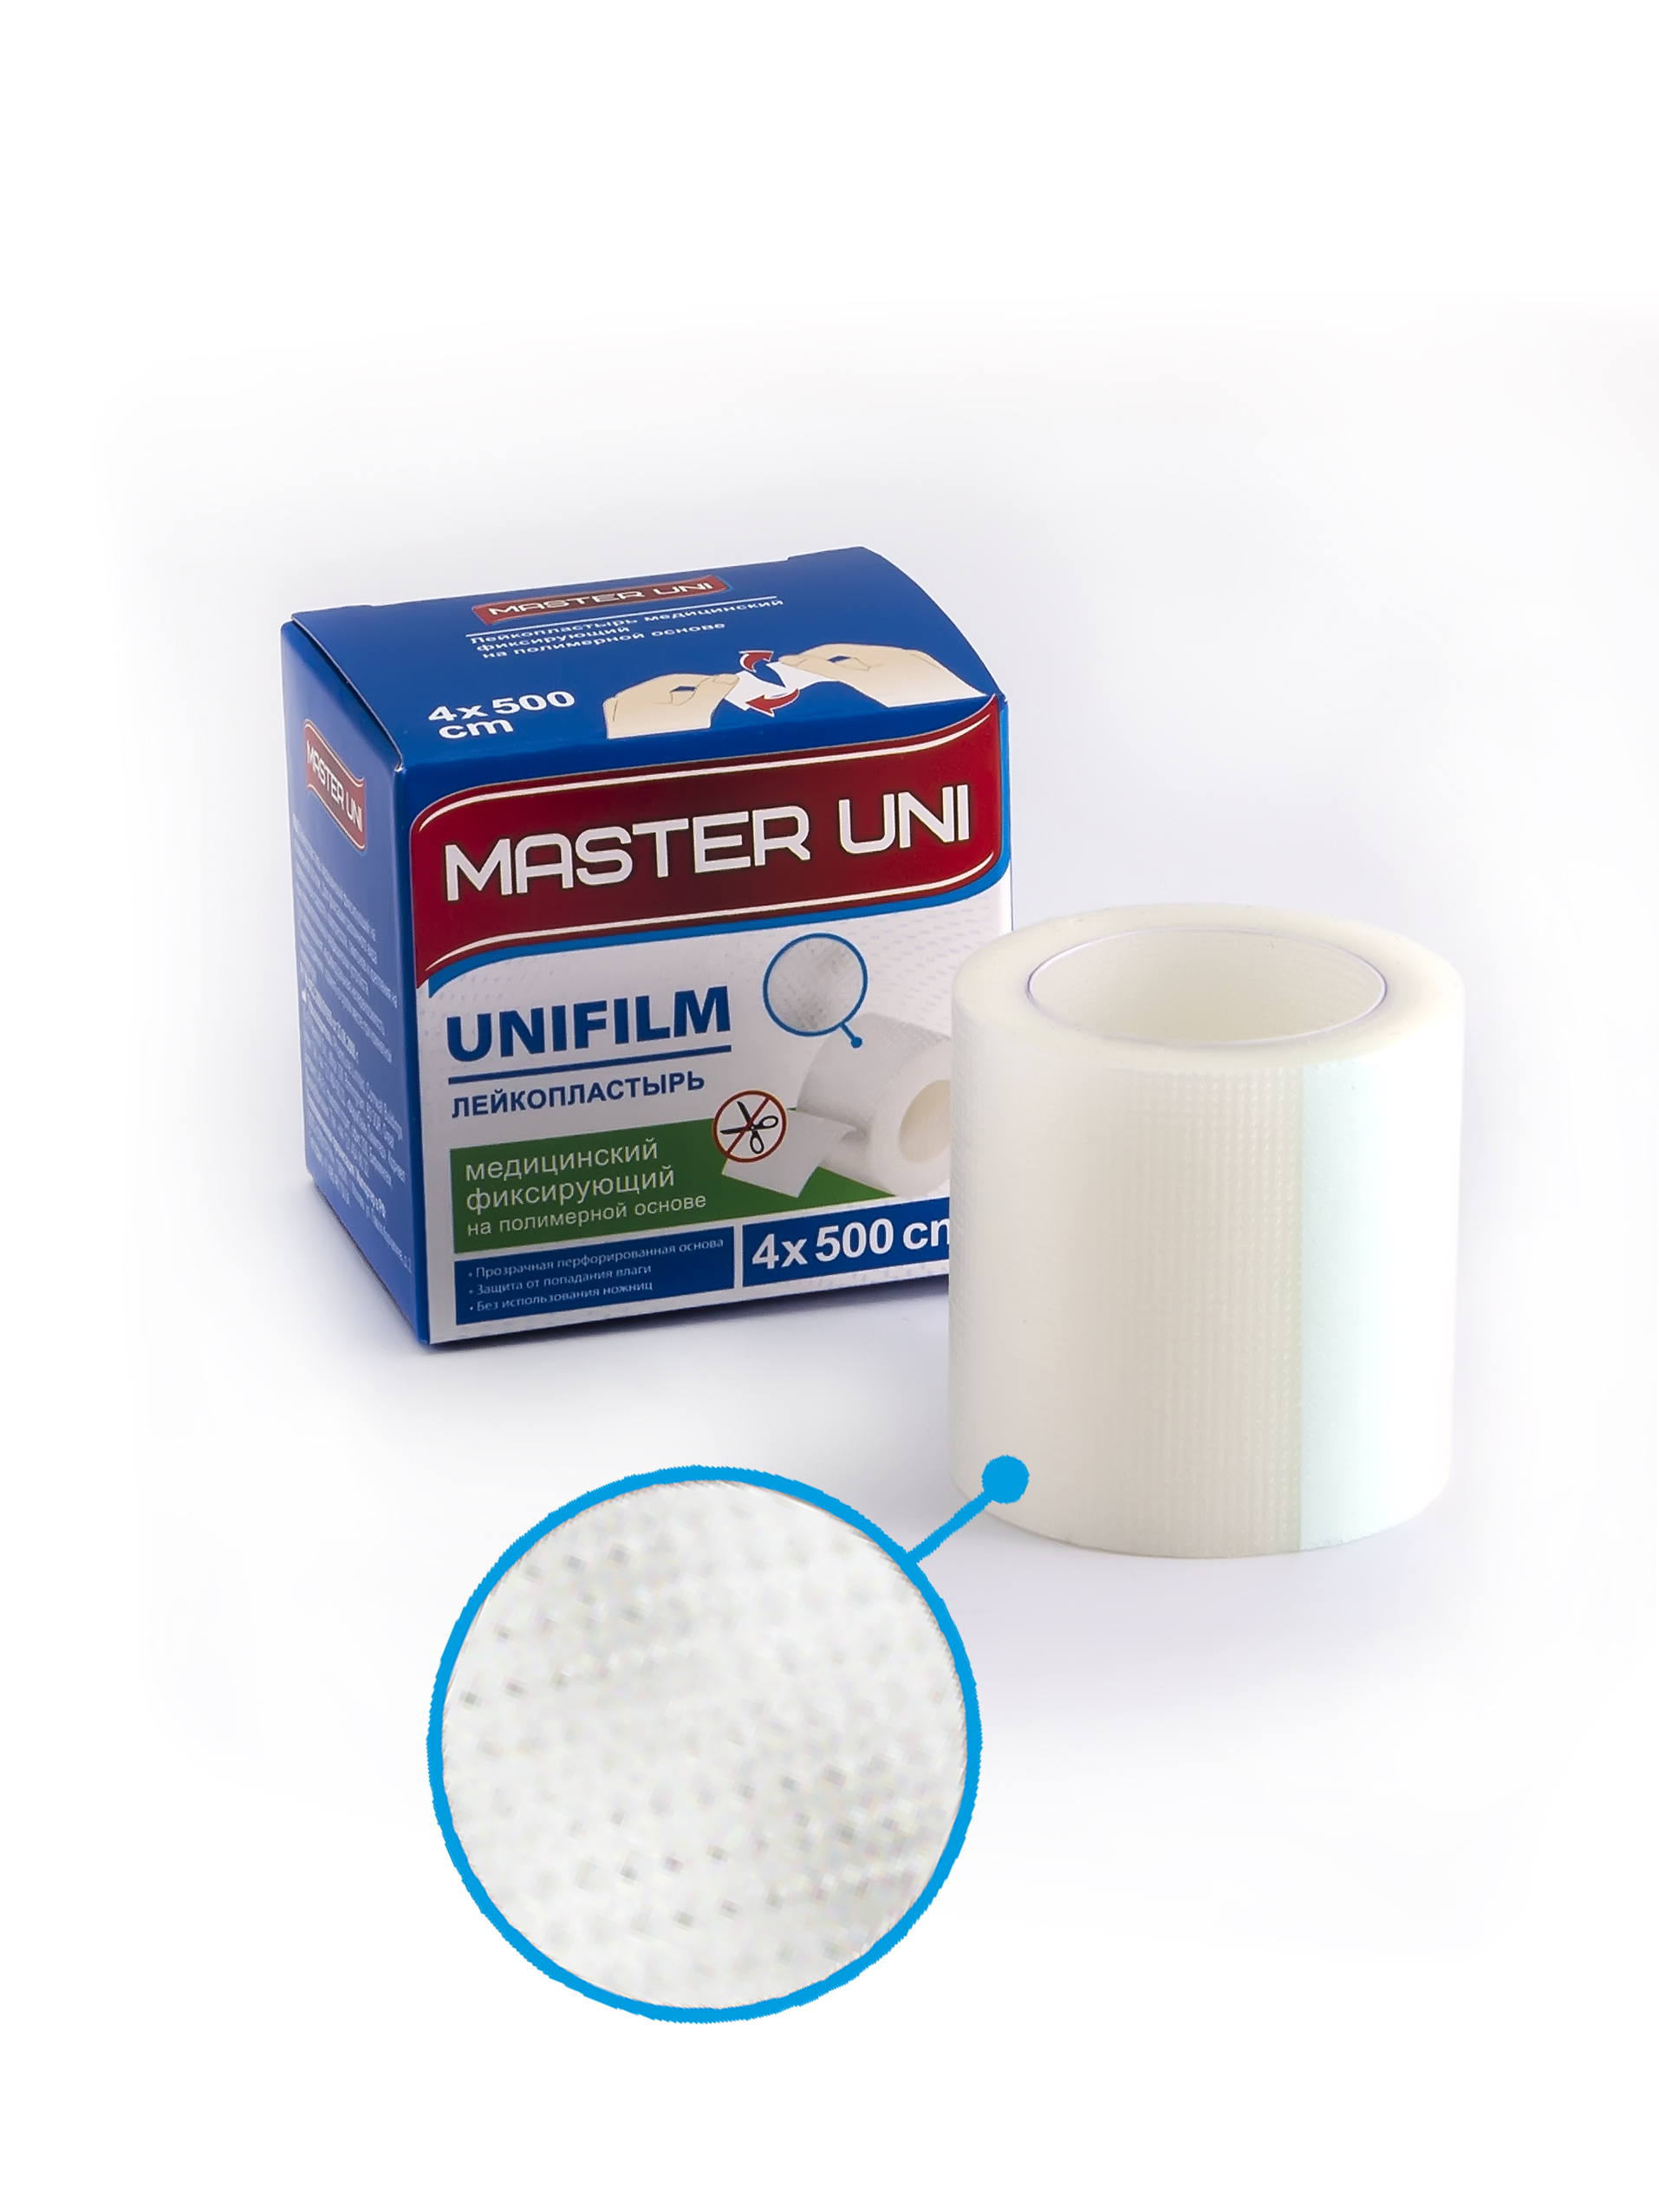 Купить UNIFILM Лейкопластырь 4 х 500 см на полимерной основе, Пластырь Master Uni Unifilm фиксирующий на полимерной основе 4 х 500 см